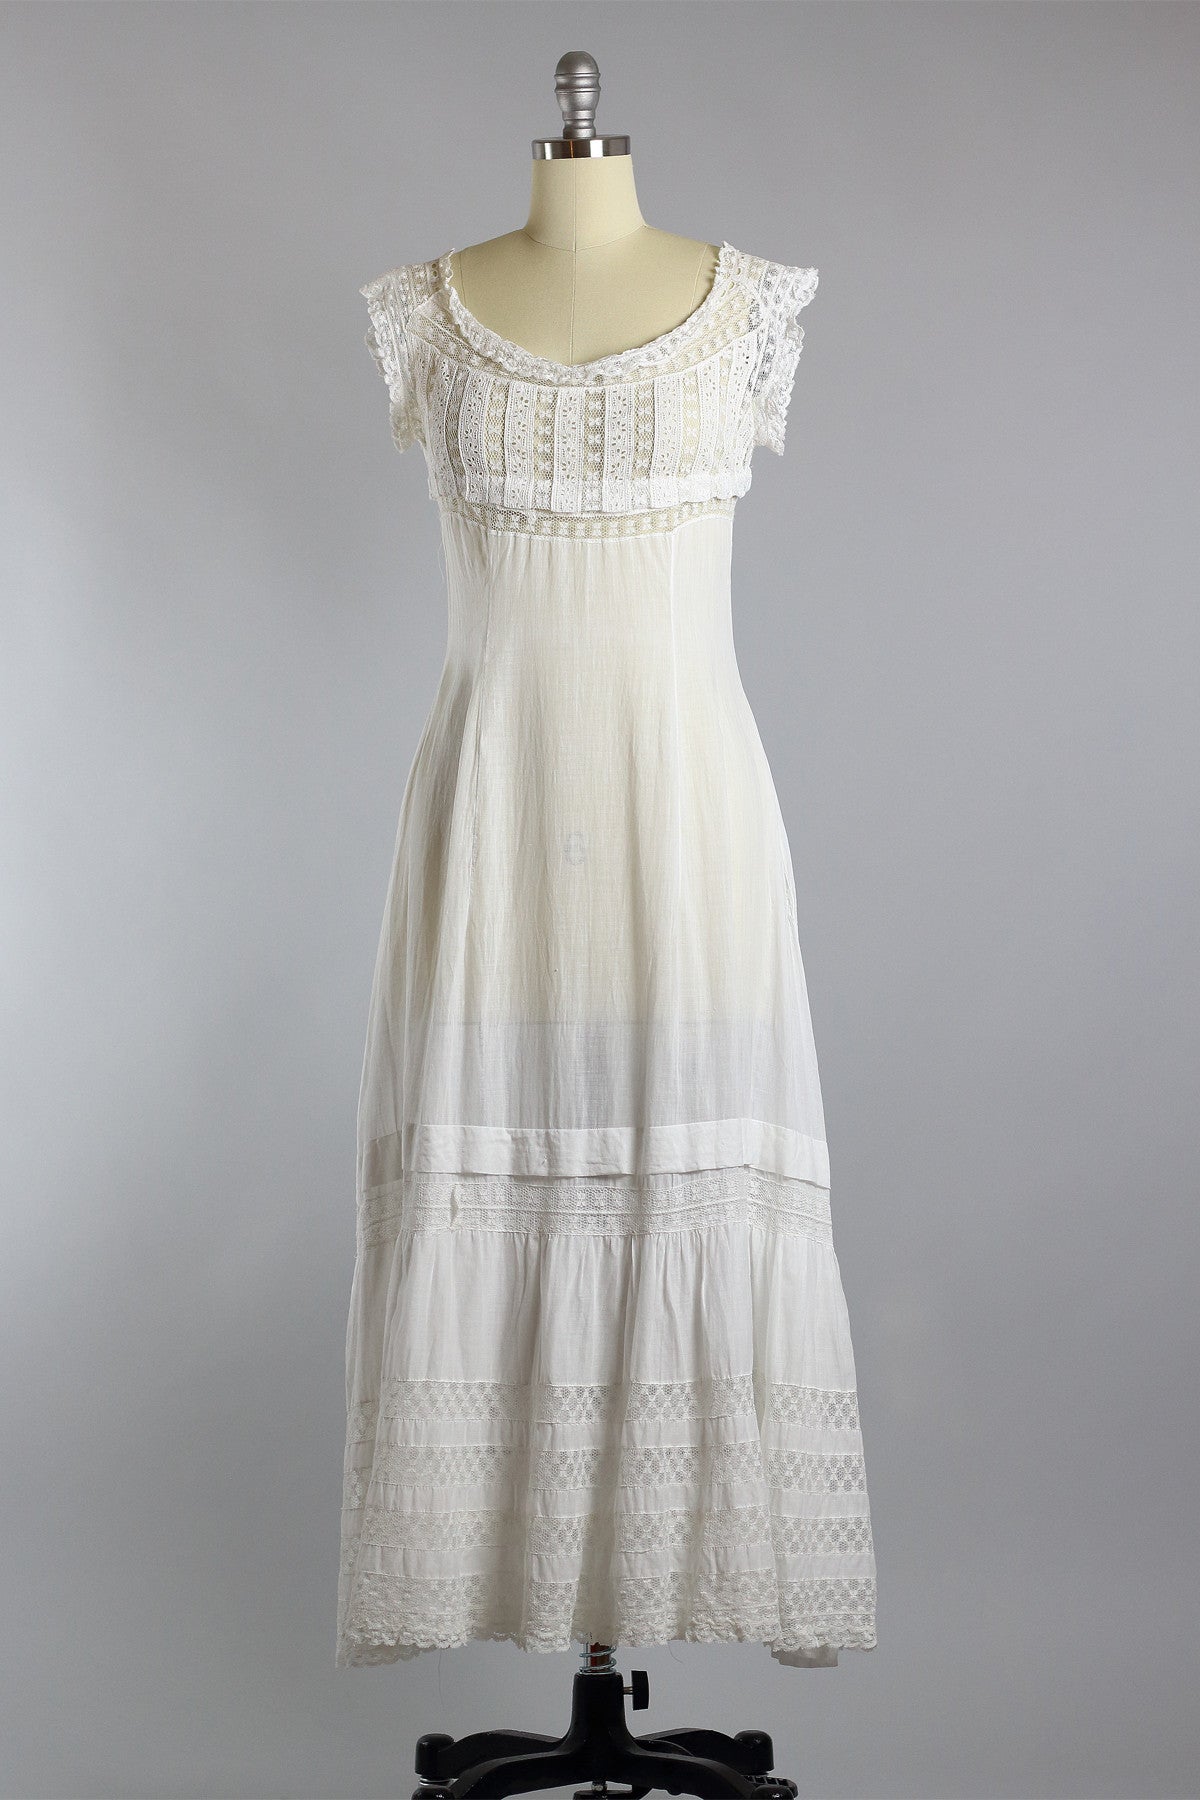 Edwardian Victorian Wedding Garden Dress – The Vintage Net